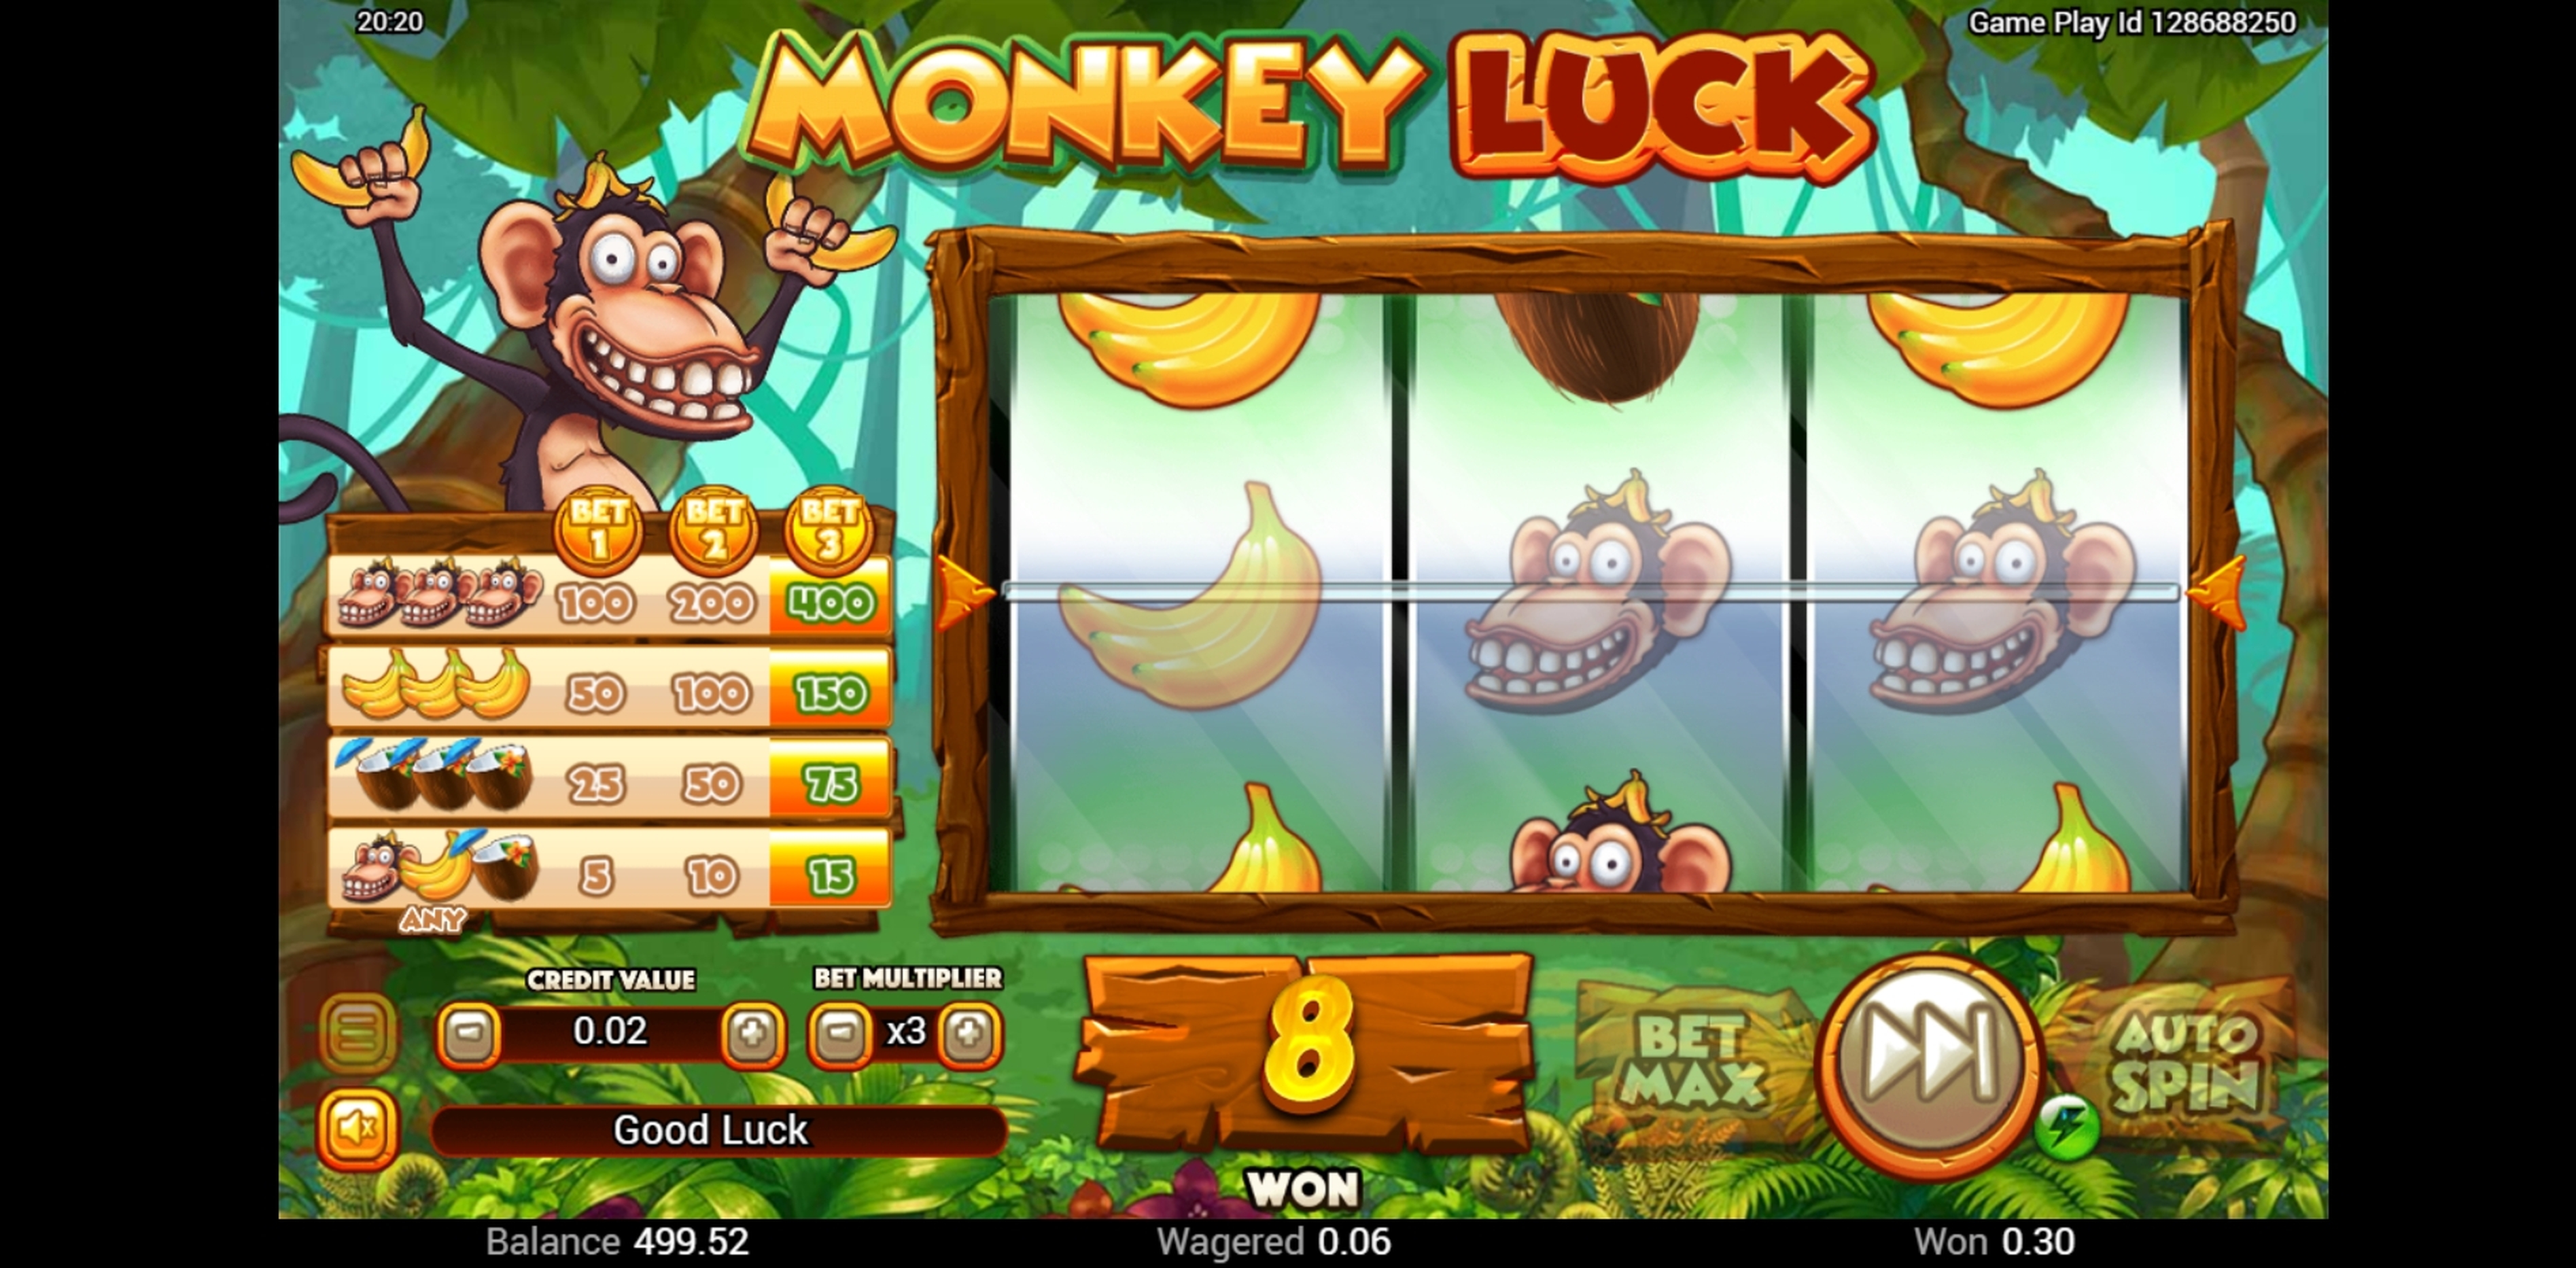 Win Money in Monkey Luck Free Slot Game by Swintt